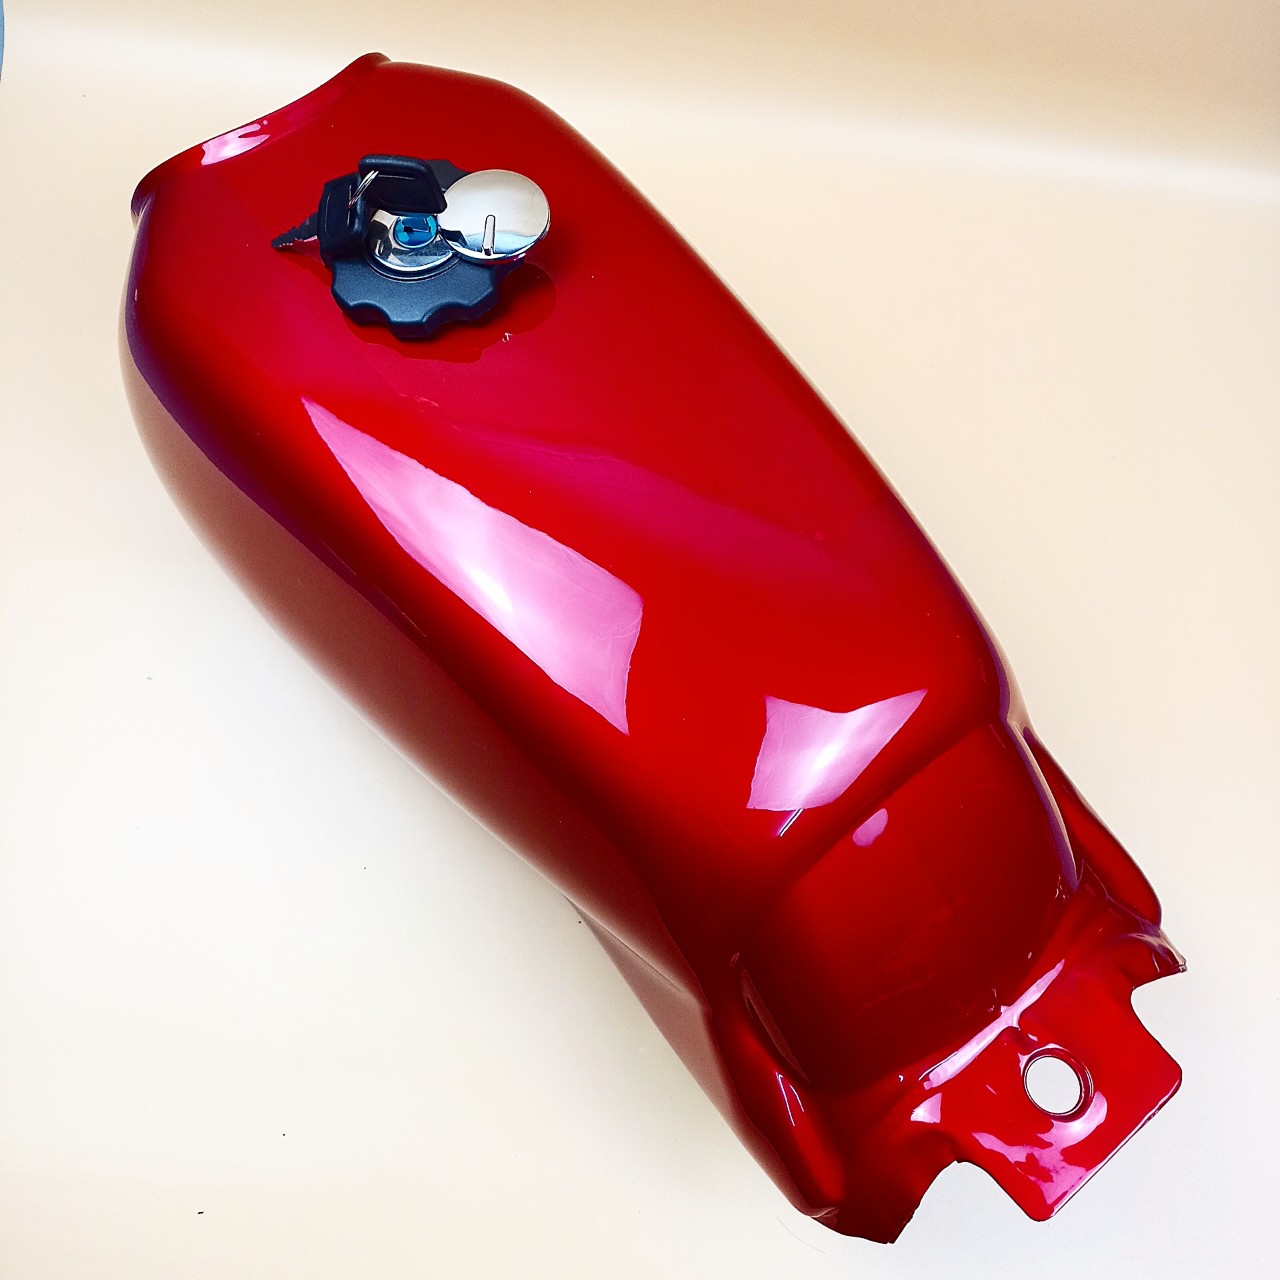 Bình xăng lớn xe  WIN 100 màu Đỏ Kèm nắp khóa bình xăng [SẴN HÀNG] Thùng binh xăng xe WIN siêu bền đẹp - LZD-G8822